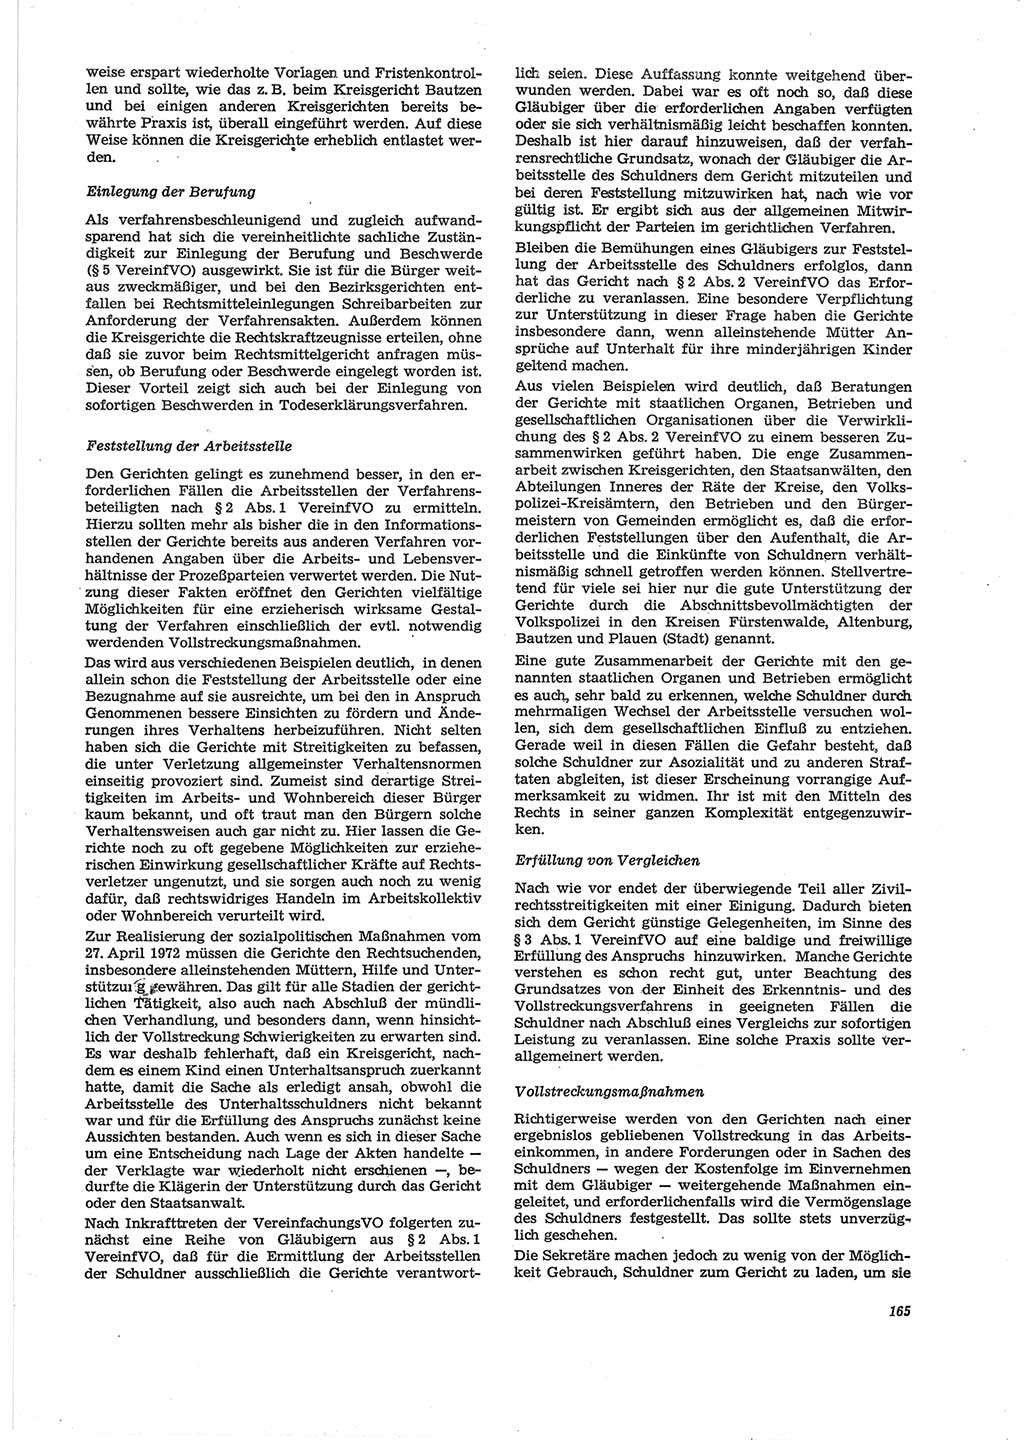 Neue Justiz (NJ), Zeitschrift für Recht und Rechtswissenschaft [Deutsche Demokratische Republik (DDR)], 28. Jahrgang 1974, Seite 165 (NJ DDR 1974, S. 165)